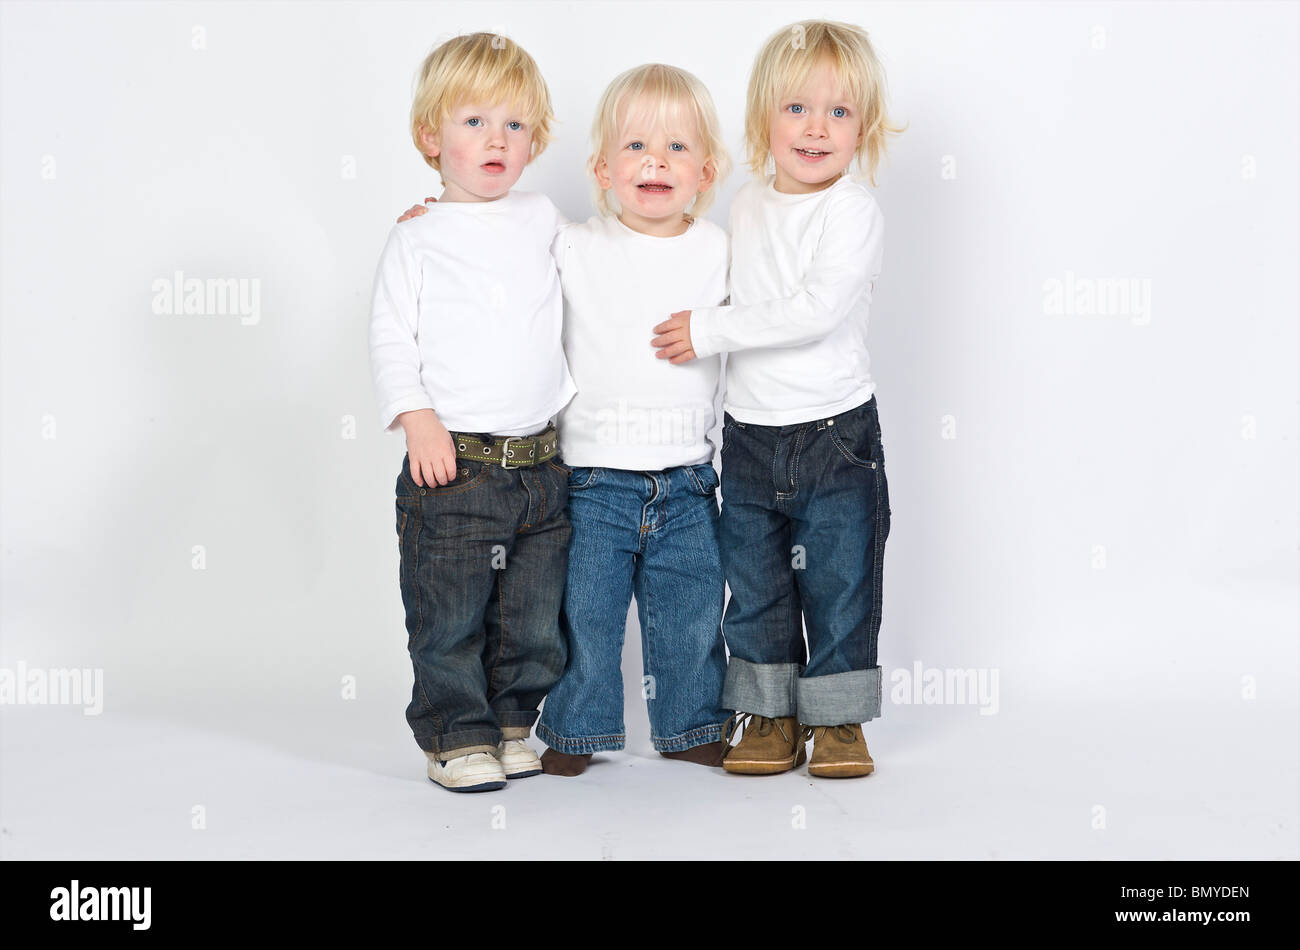 2-3 anni, 3-4 anni età atteggiamento bionda blue boy caucasian bambini olandese etnia etnica europa occhio europeo frien Foto Stock